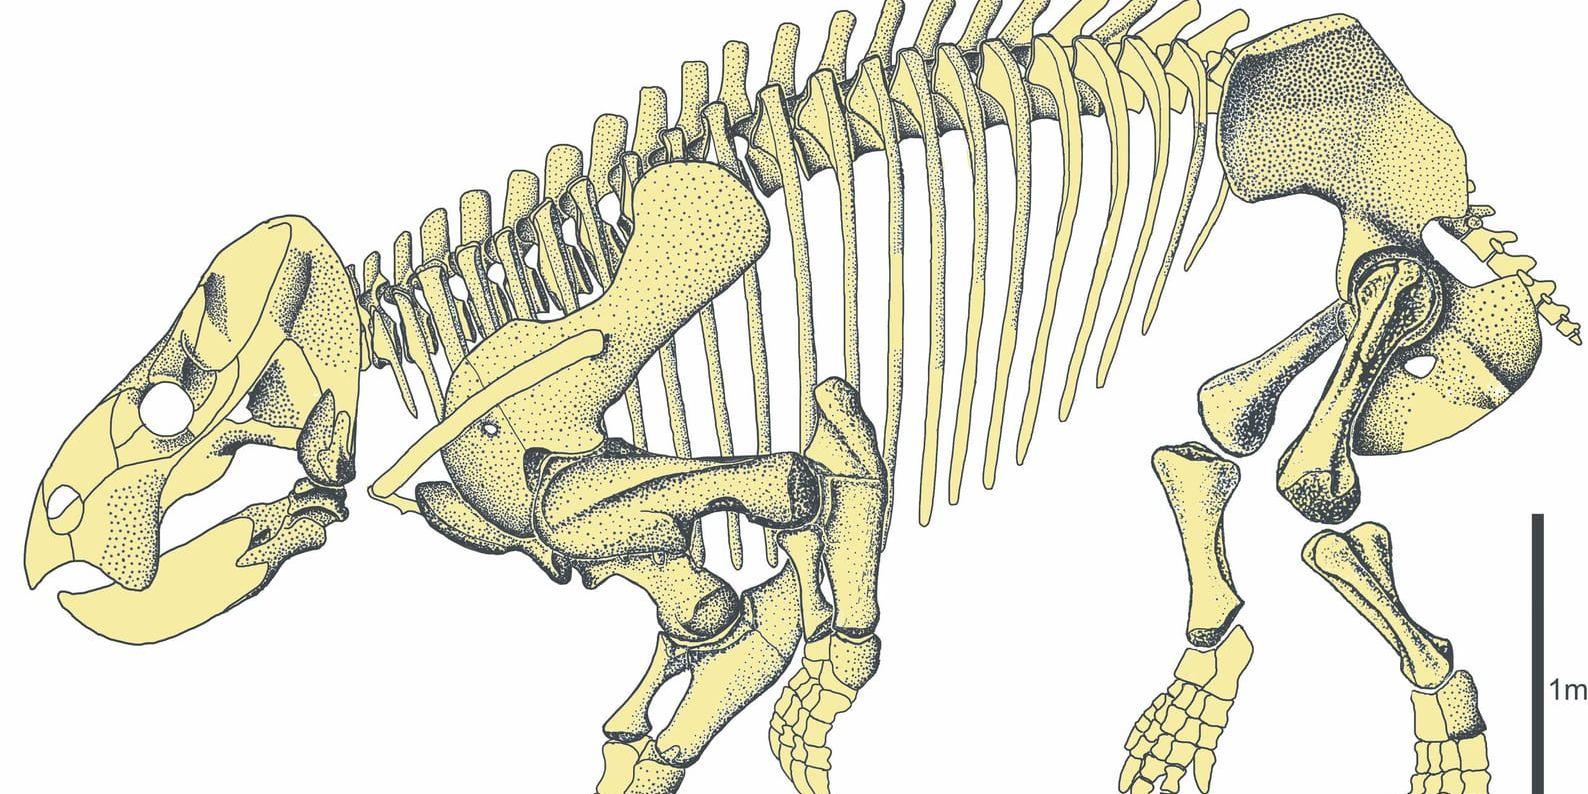 En rekonstruktion av Lisowicias skelett. Arten var stor som en elefant.